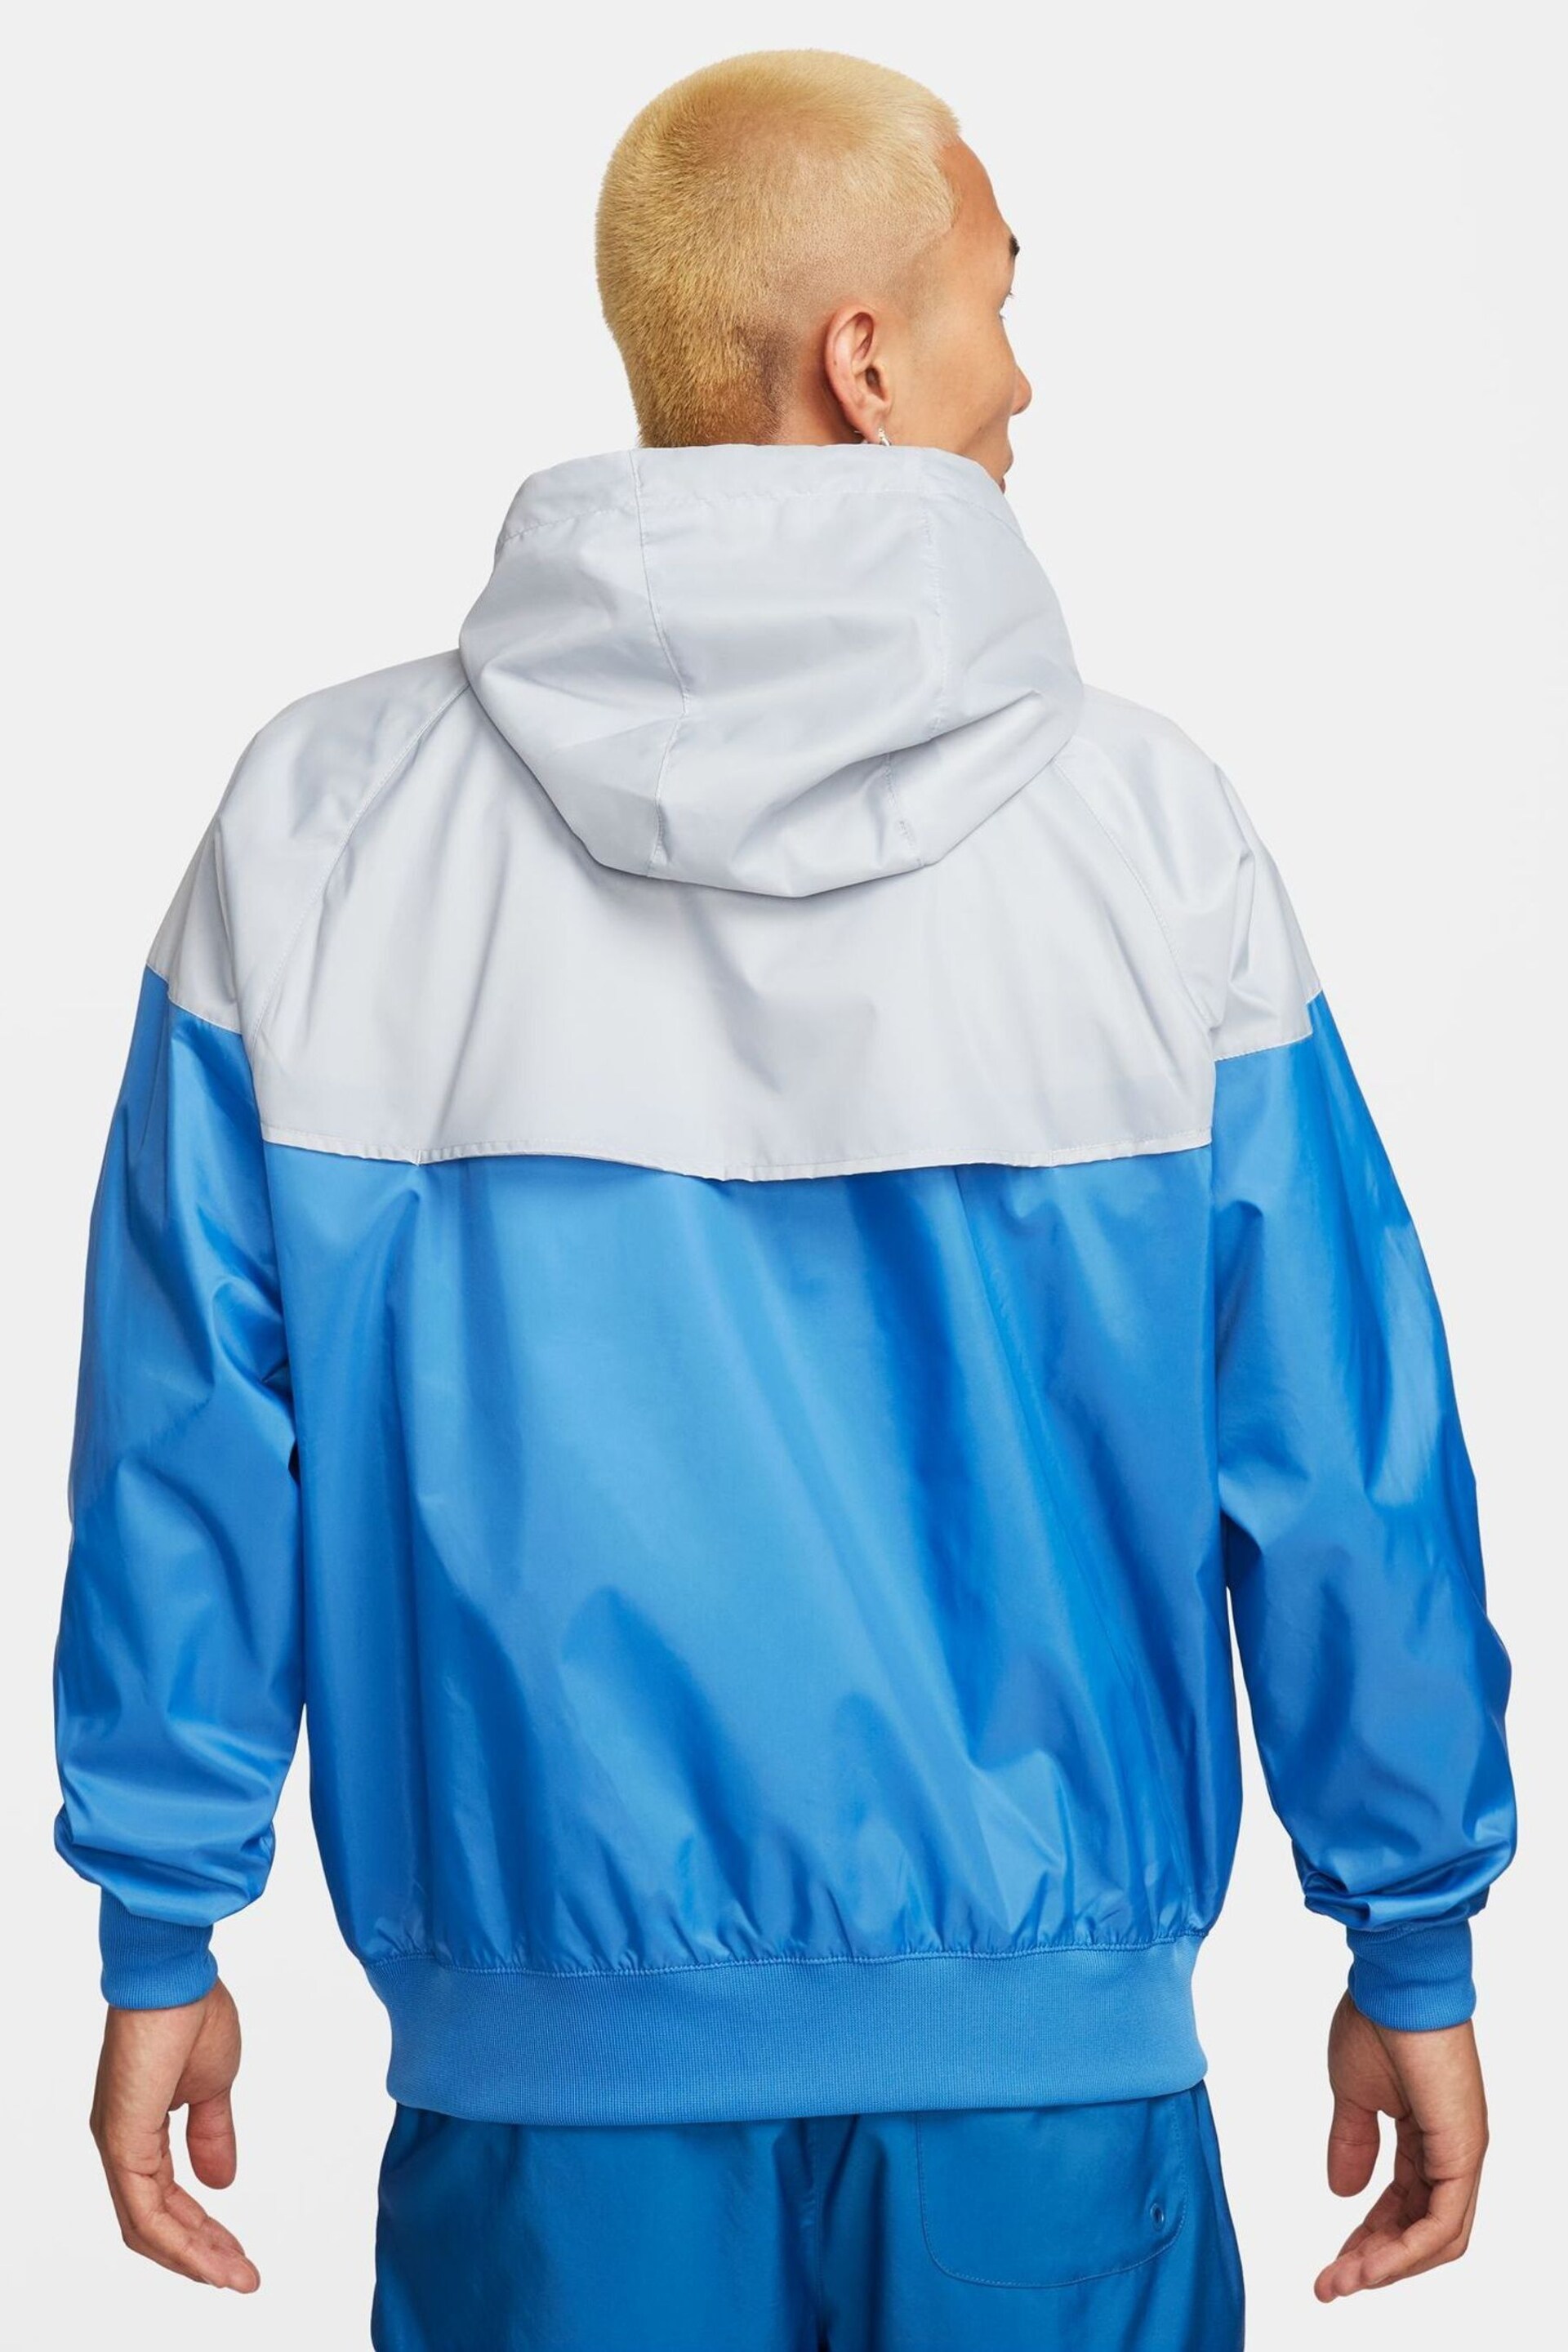 Nike Blue/Grey Sportswear Windrunner Hooded Jacket - Image 2 of 14